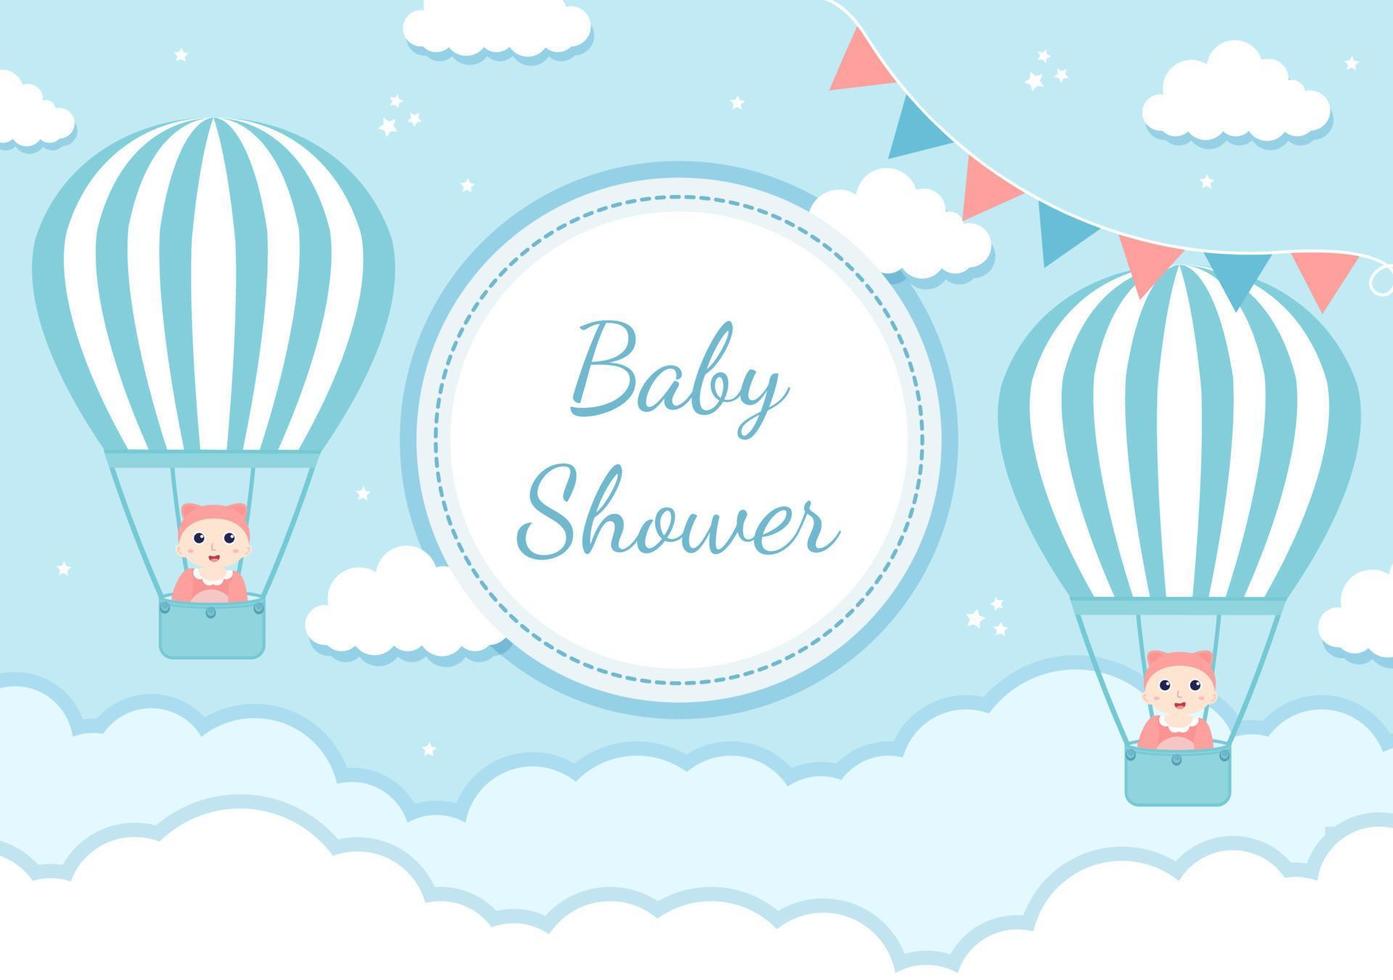 baby shower niño o niña con lindos juguetes y accesorios de diseño ilustración de fondo de bebés recién nacidos para invitaciones y tarjetas de felicitación vector